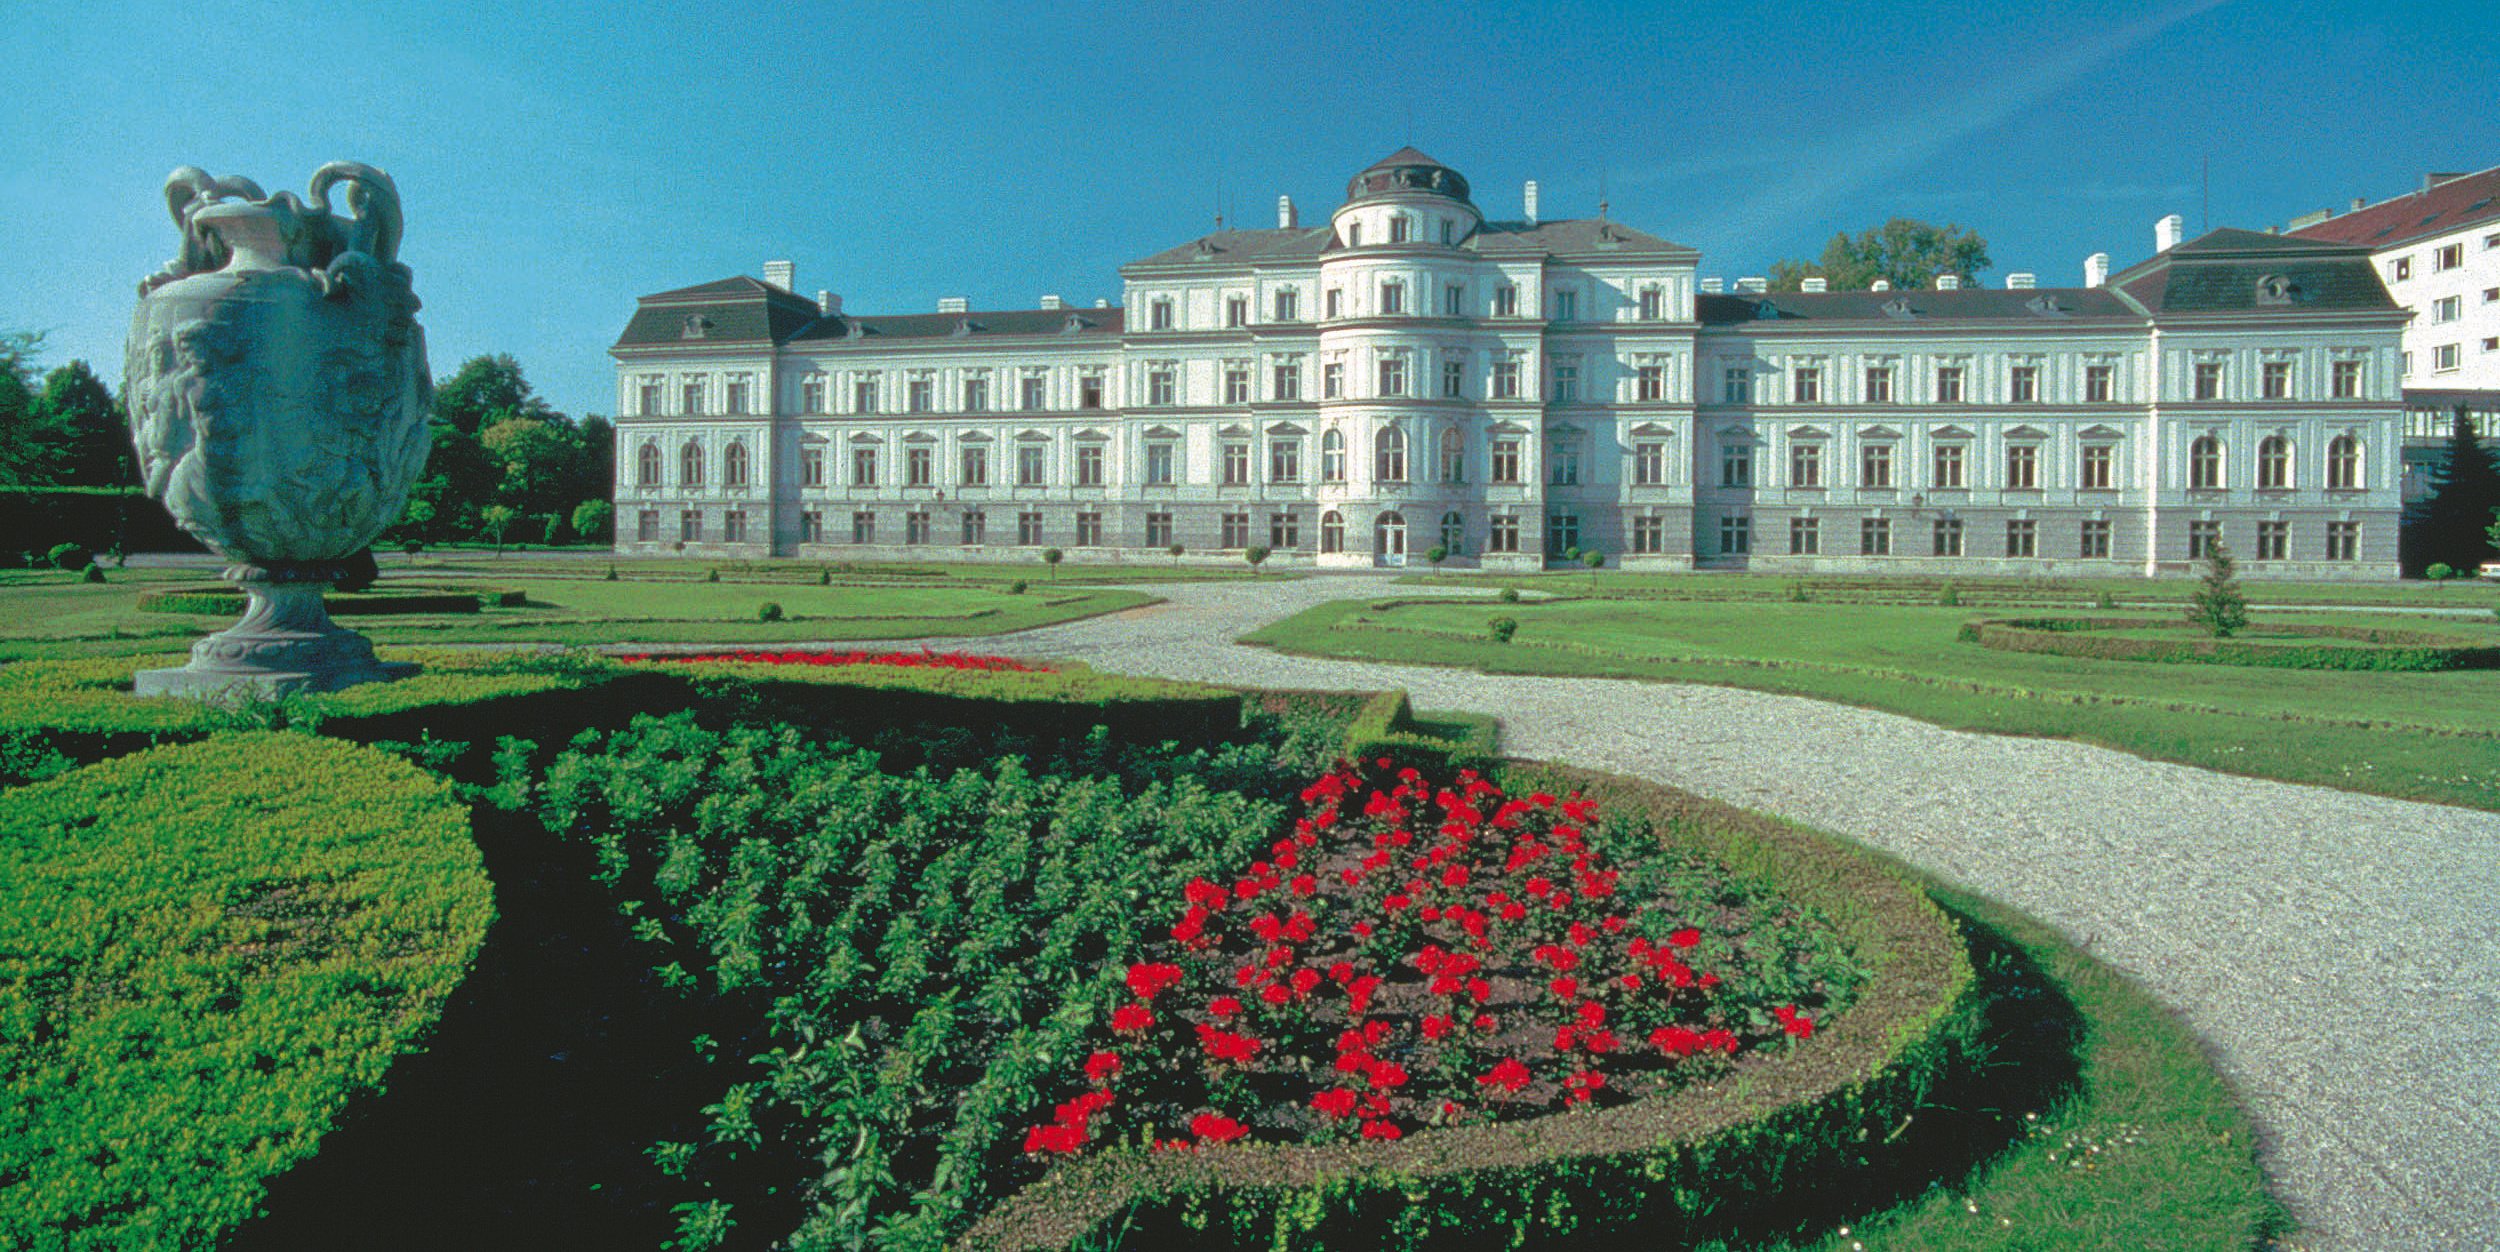 Palais Augarten in wien mit grüner saftiger Wiese im Vordergrund und rotem Blumenbeet